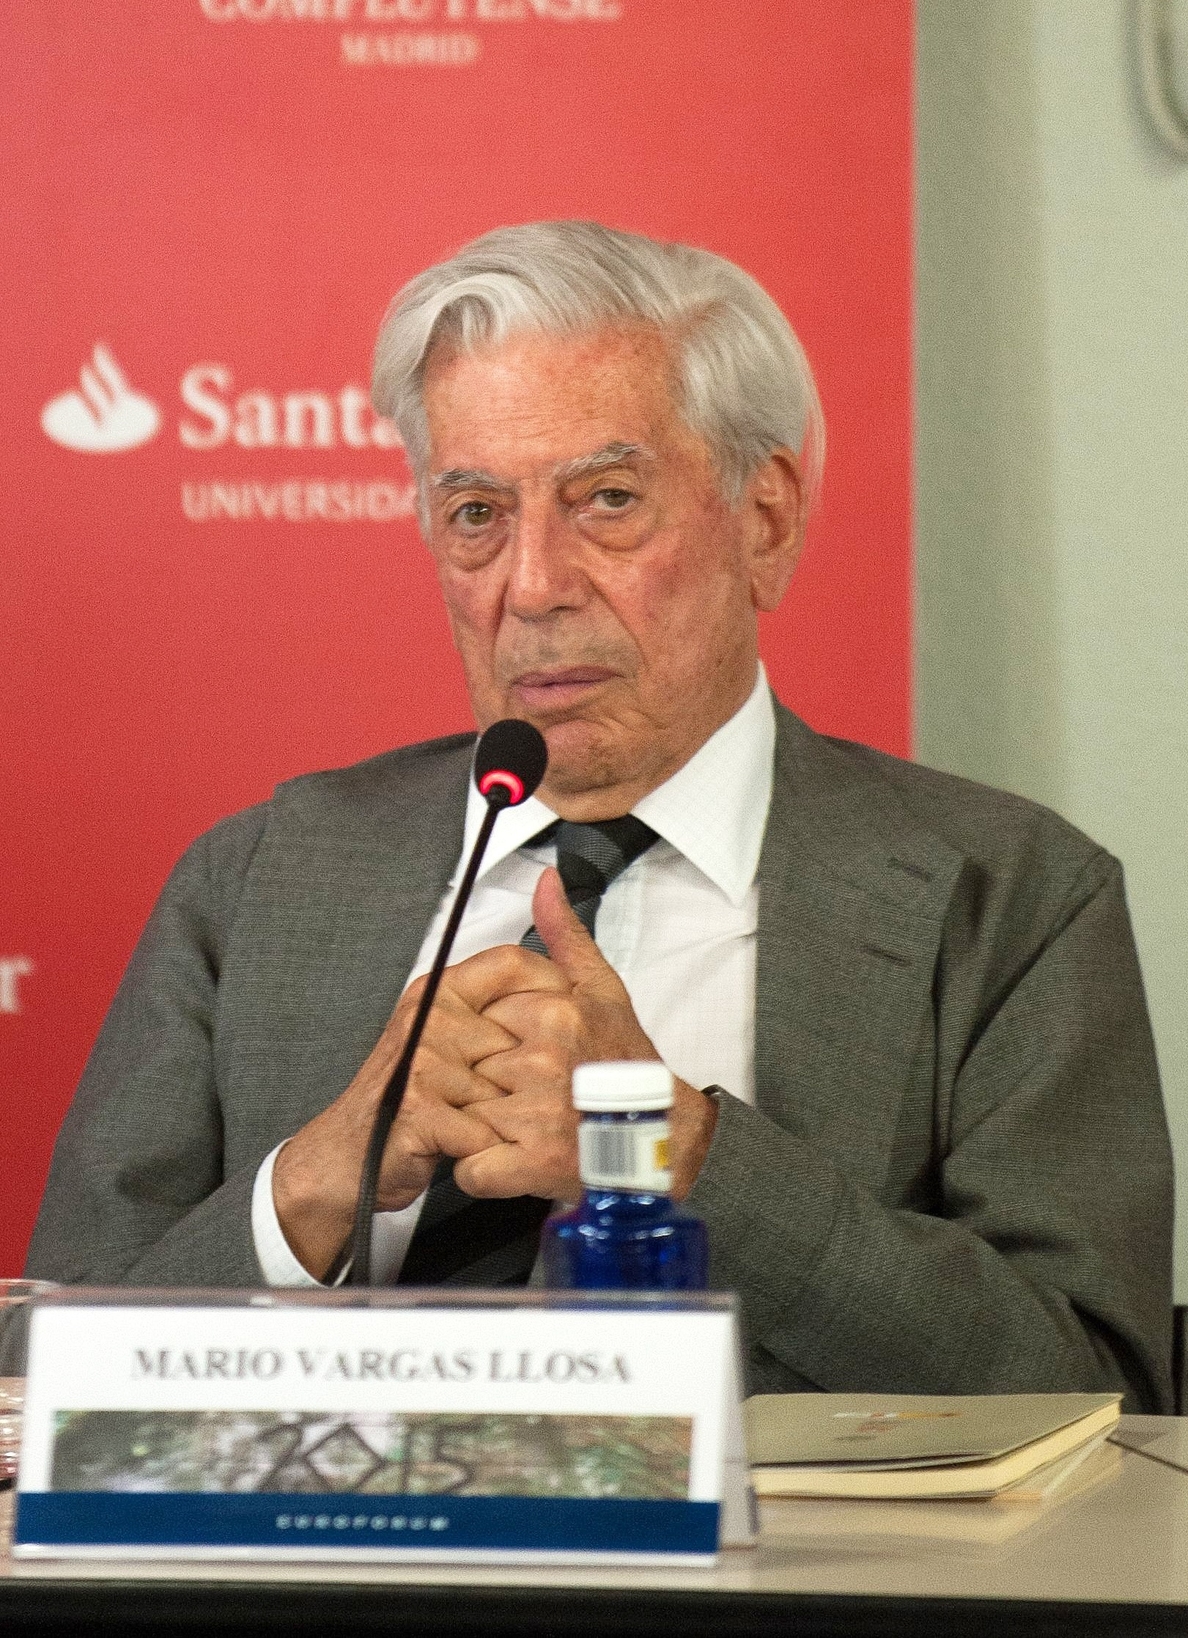 Mario Vargas Llosa participa en los cursos de verano de San Lorenzo de El Escorial